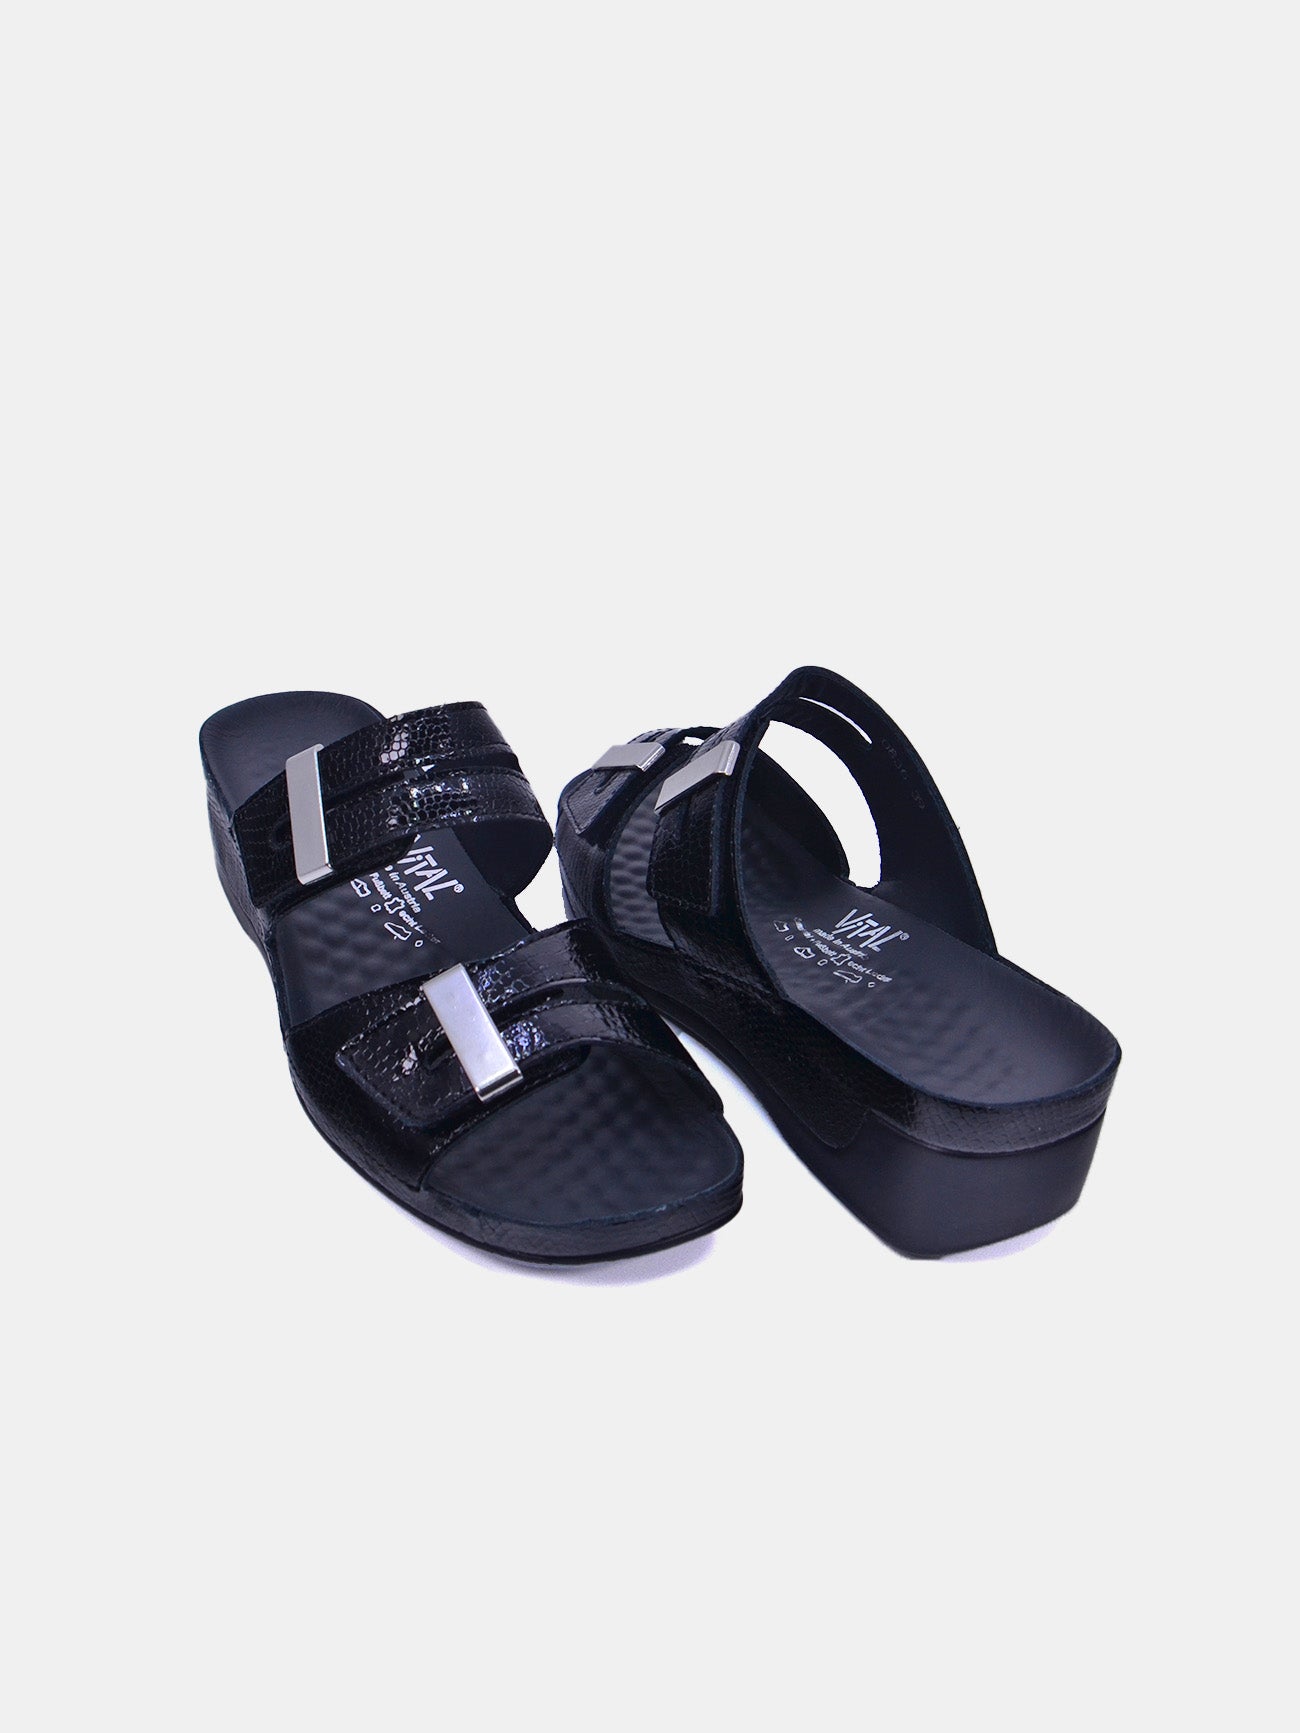 Vital 0836-458 Women's Sandals #color_Black